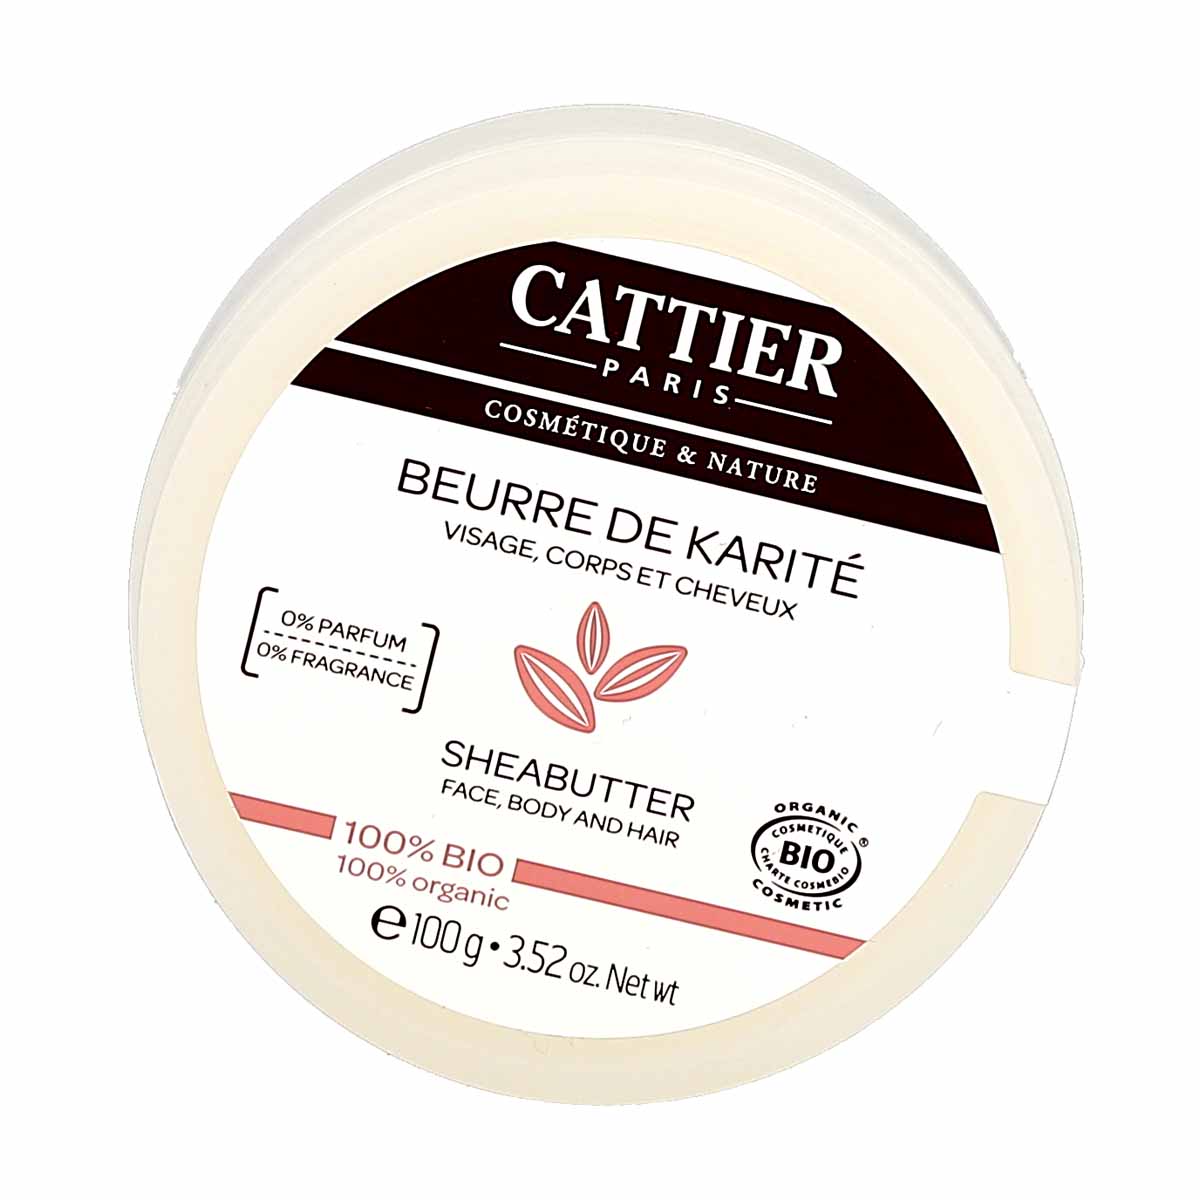 Le beurre de karité bio cattier est un soin utilisé pour favoriser le  renouvellement cellulaire